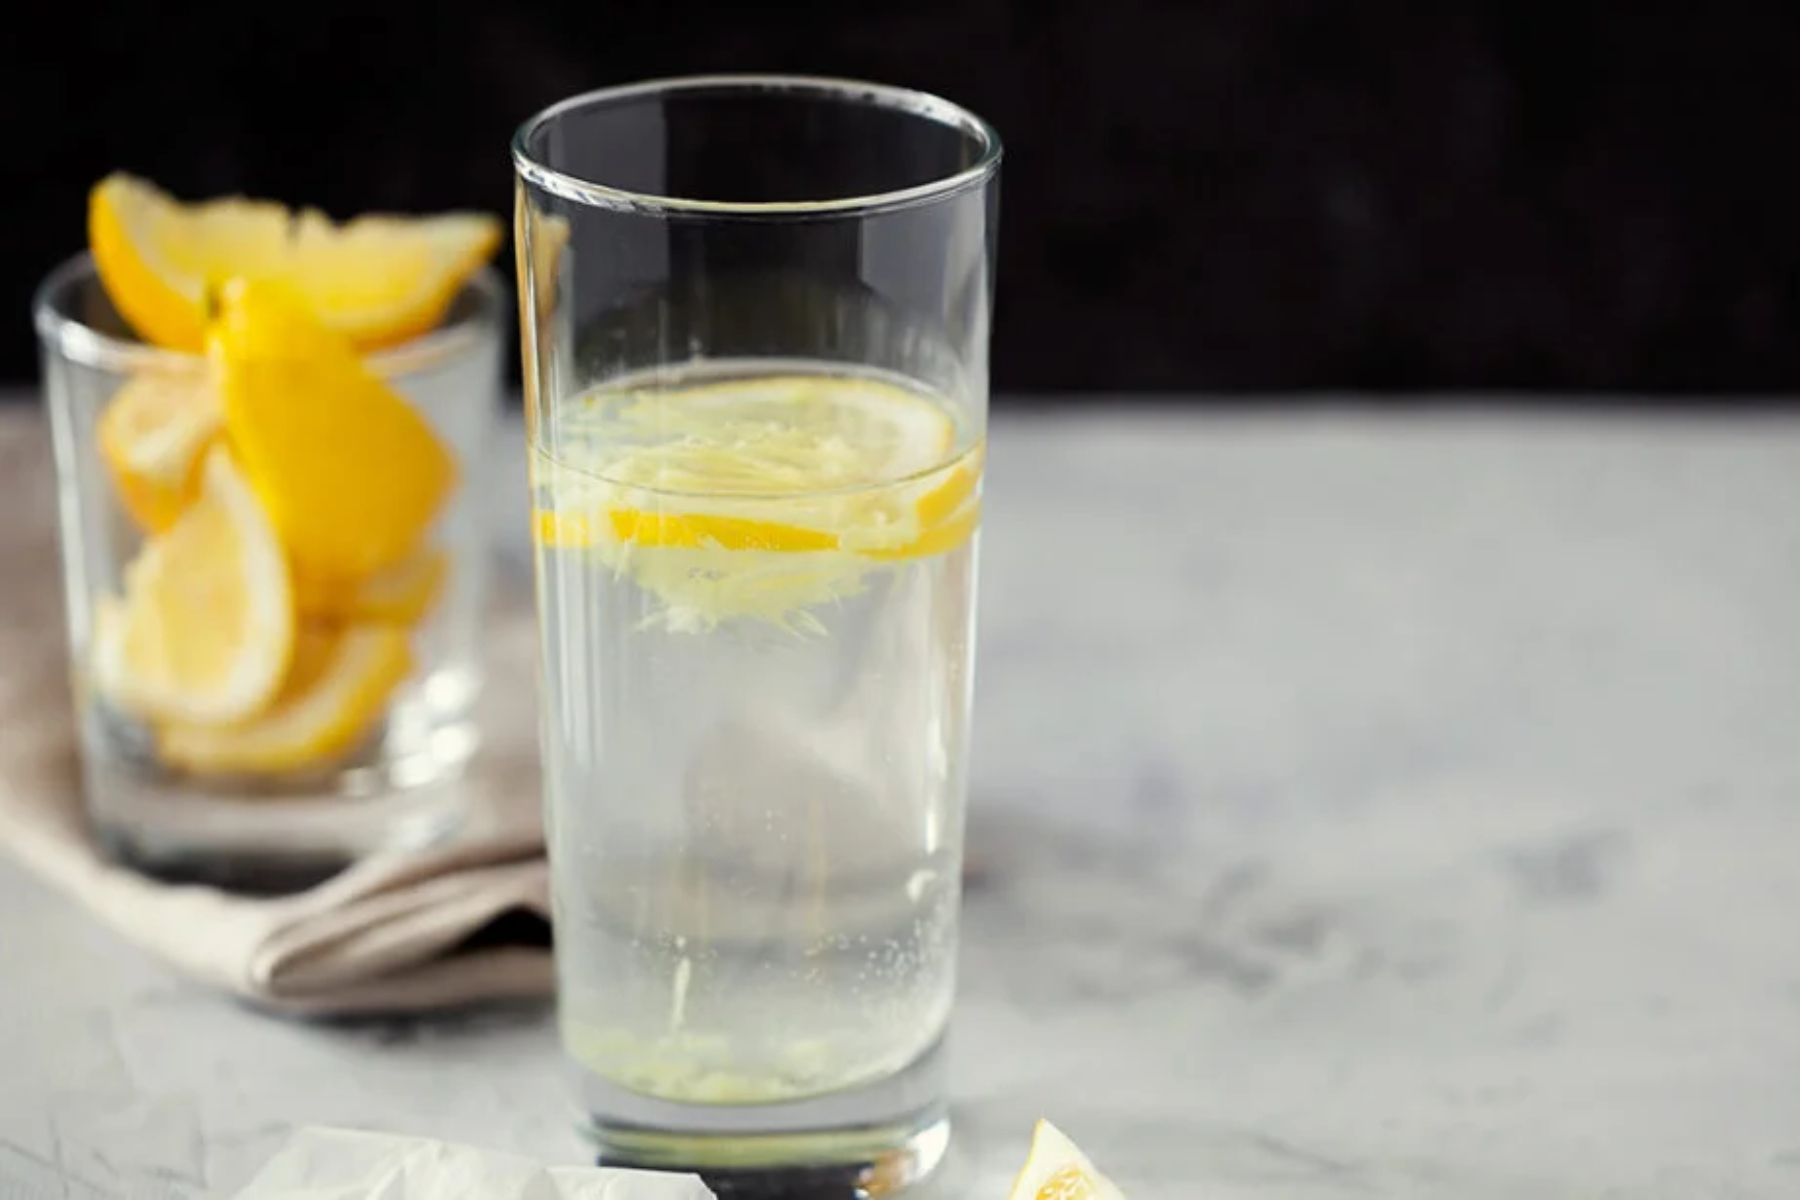 Ενυδάτωση: Πώς το νερό με λεμόνι μπορεί να βελτιώσει την ενυδάτωσή μας;